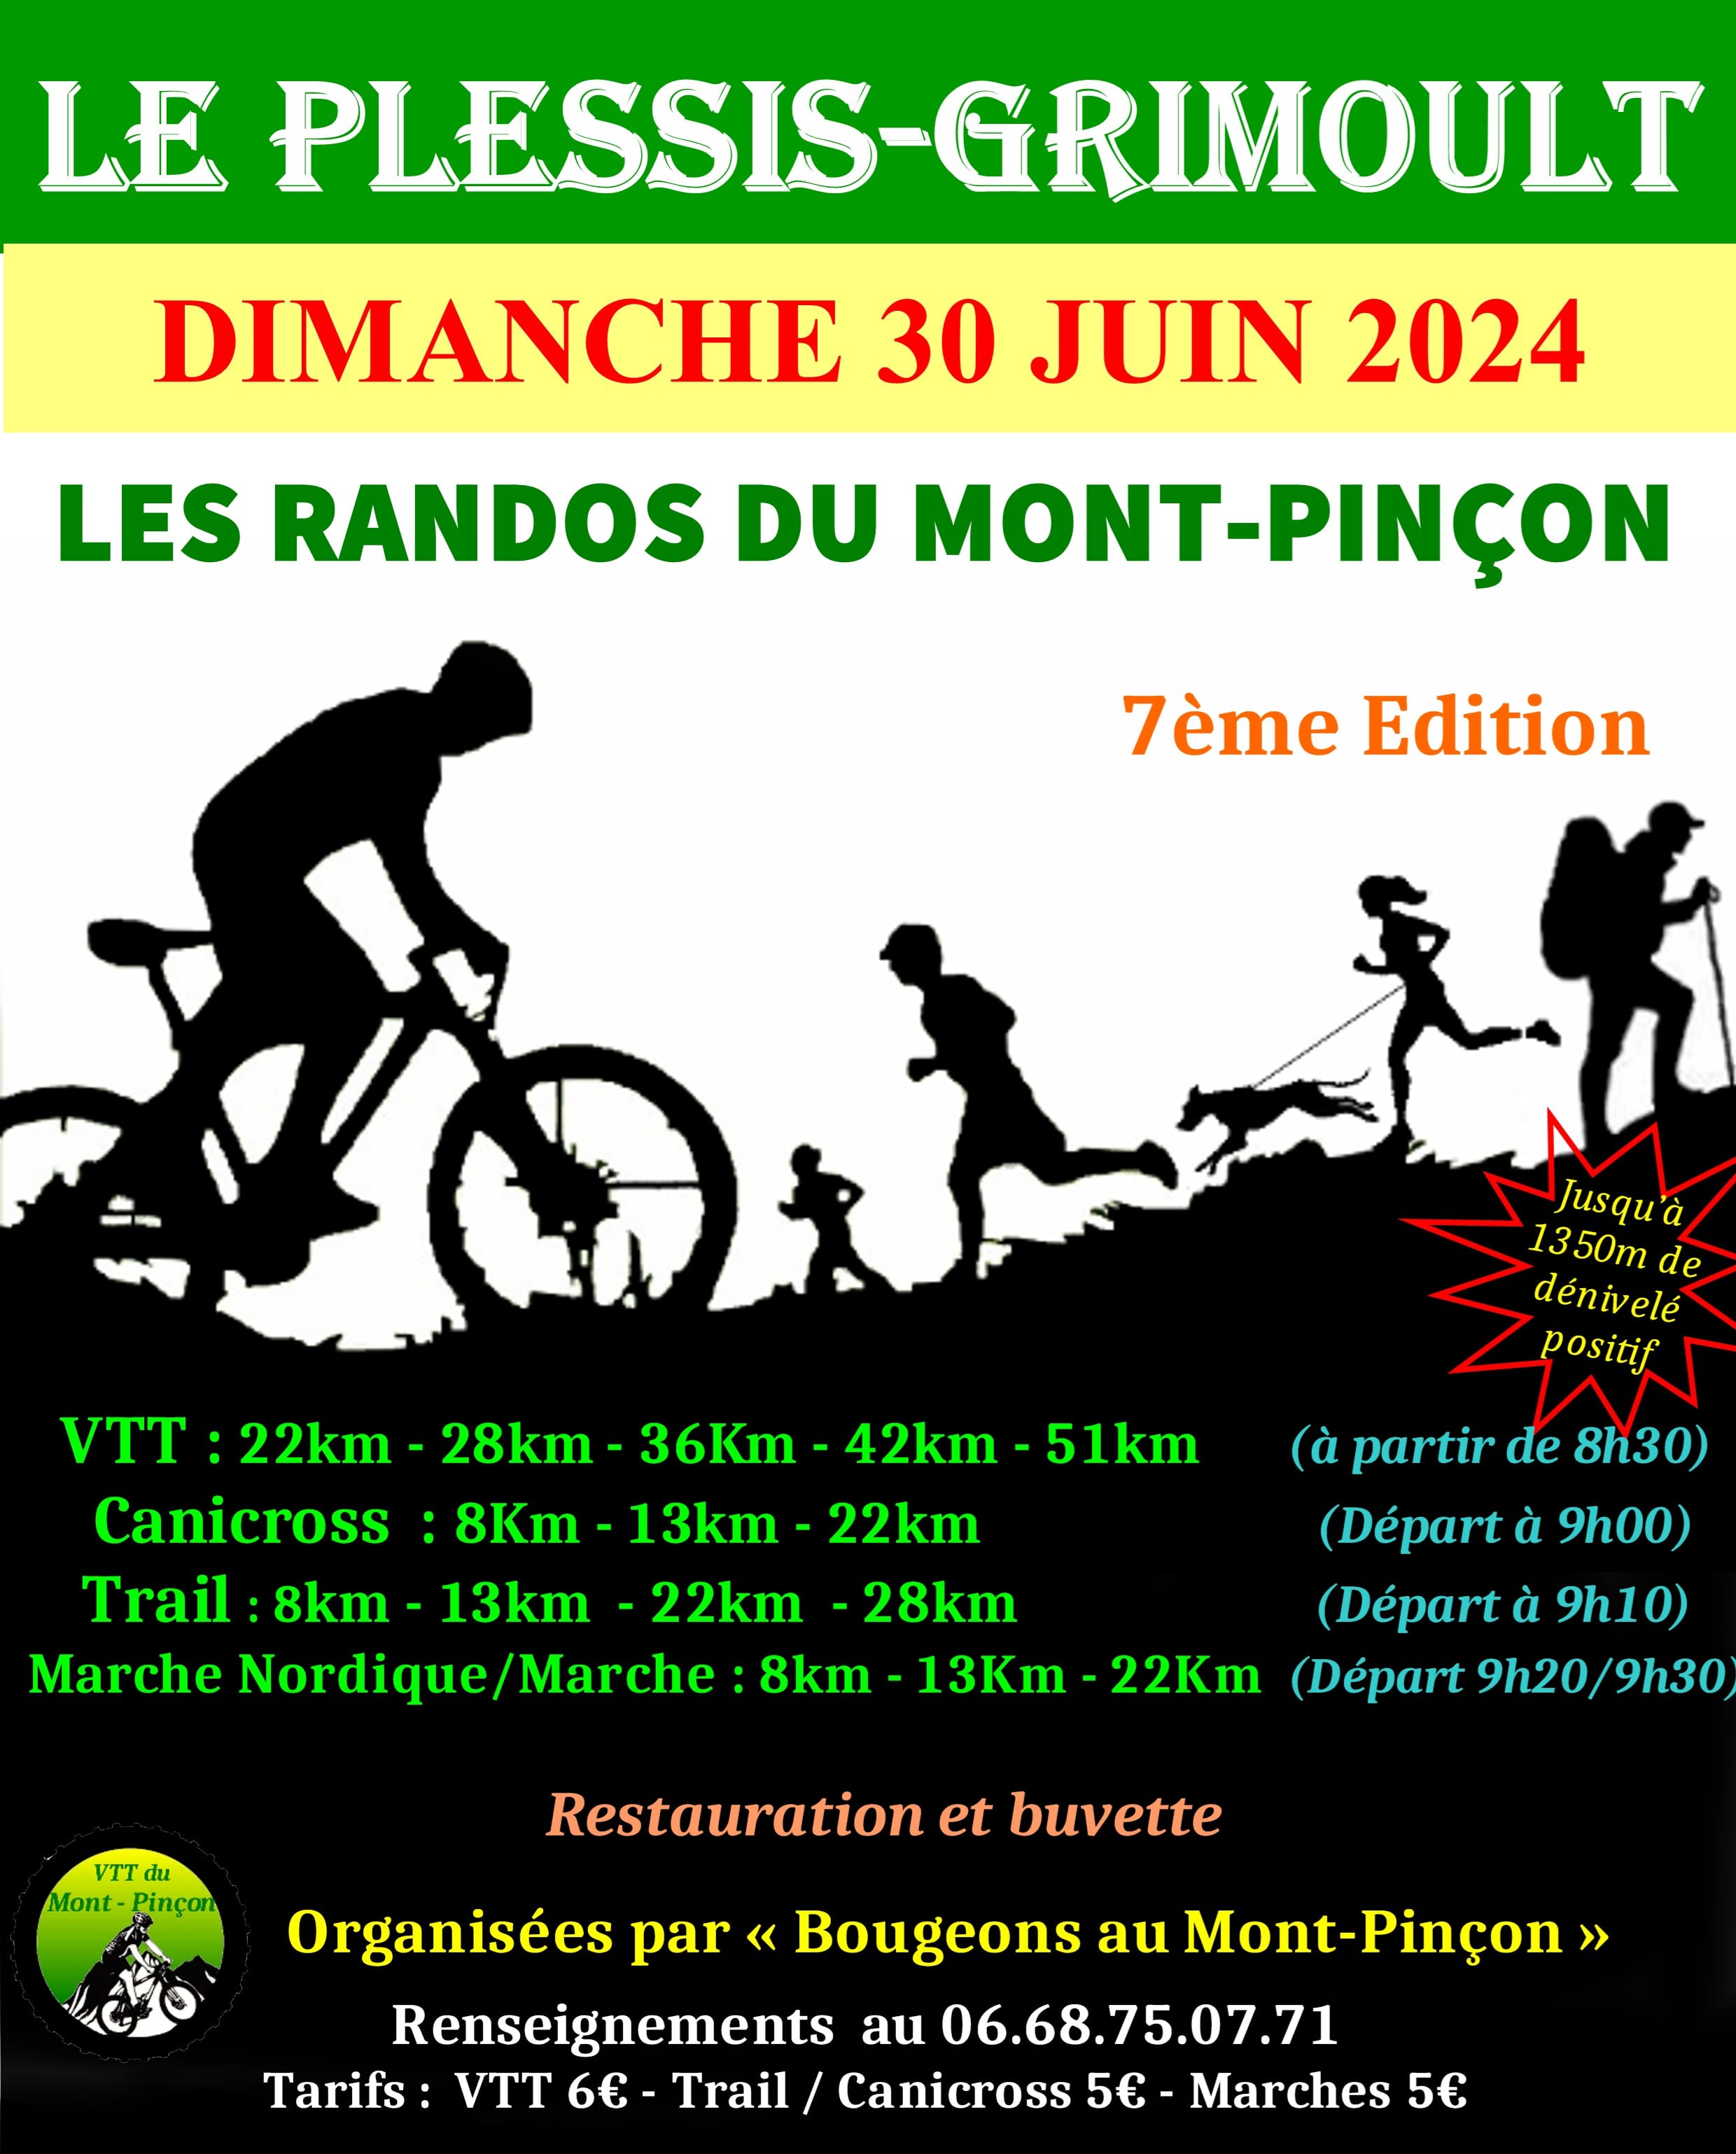 Affiche de Les Randos du Mont-Pinçon (7ème édition) au Plessis-Grimoult